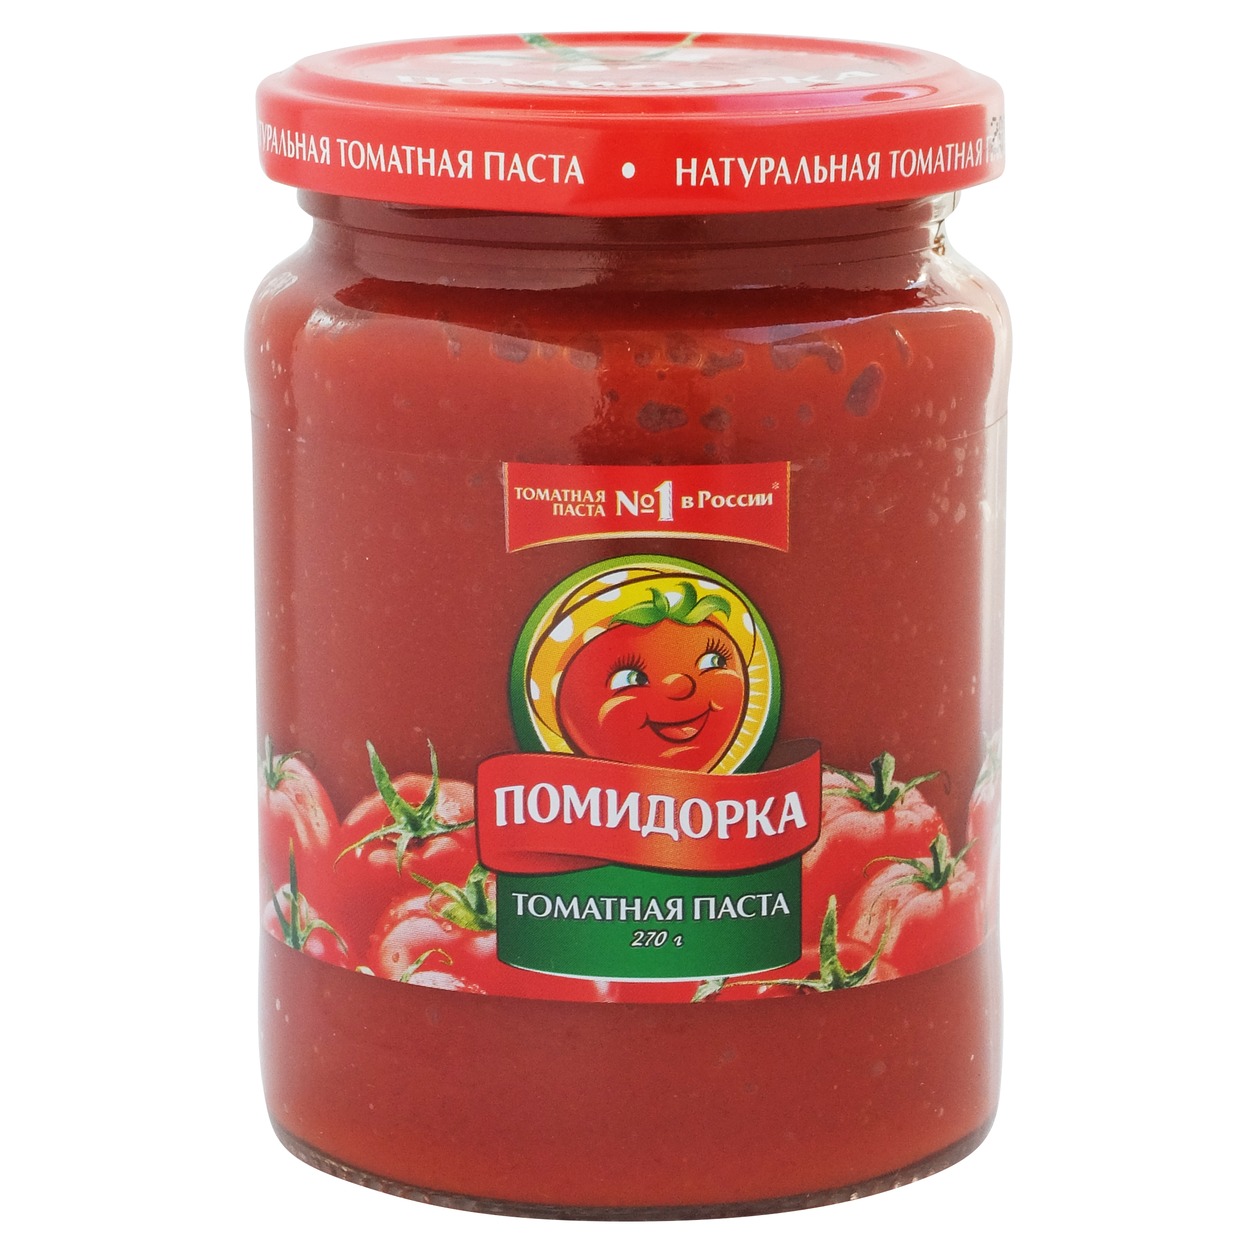 ПОМИДОРКА Паста томатная паст.ст/б 250мл по акции в Пятерочке